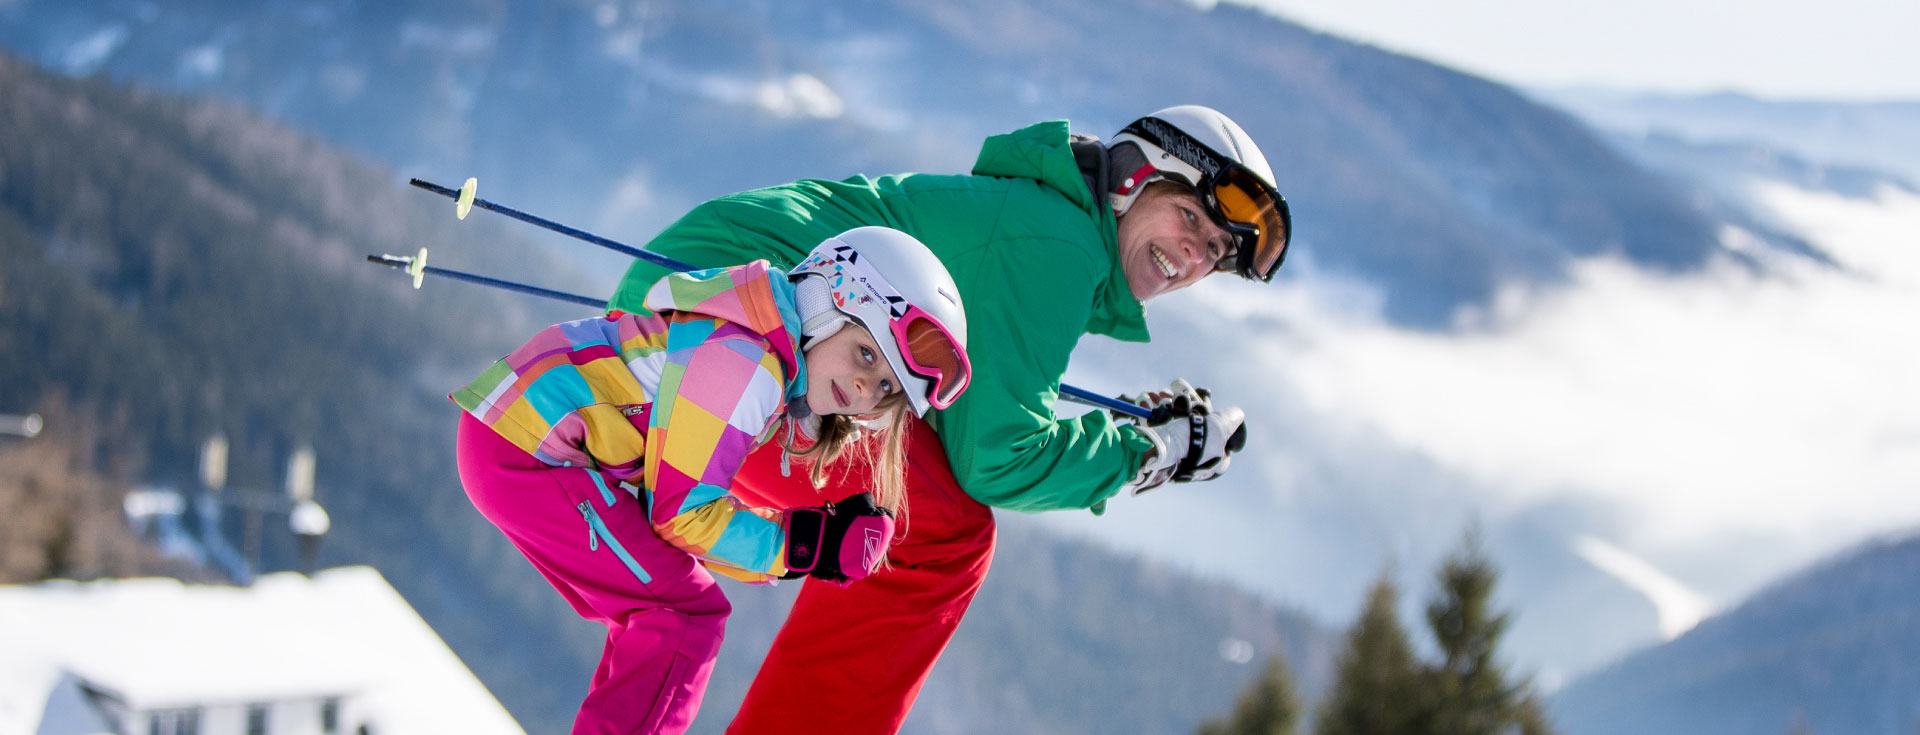 DANKE!<br />
Für euren Besuch in der Wintersaison 2021/2022. <br /> Wir freuen uns auf die kommende Skisaison mit neuer Tagesgastronomie!